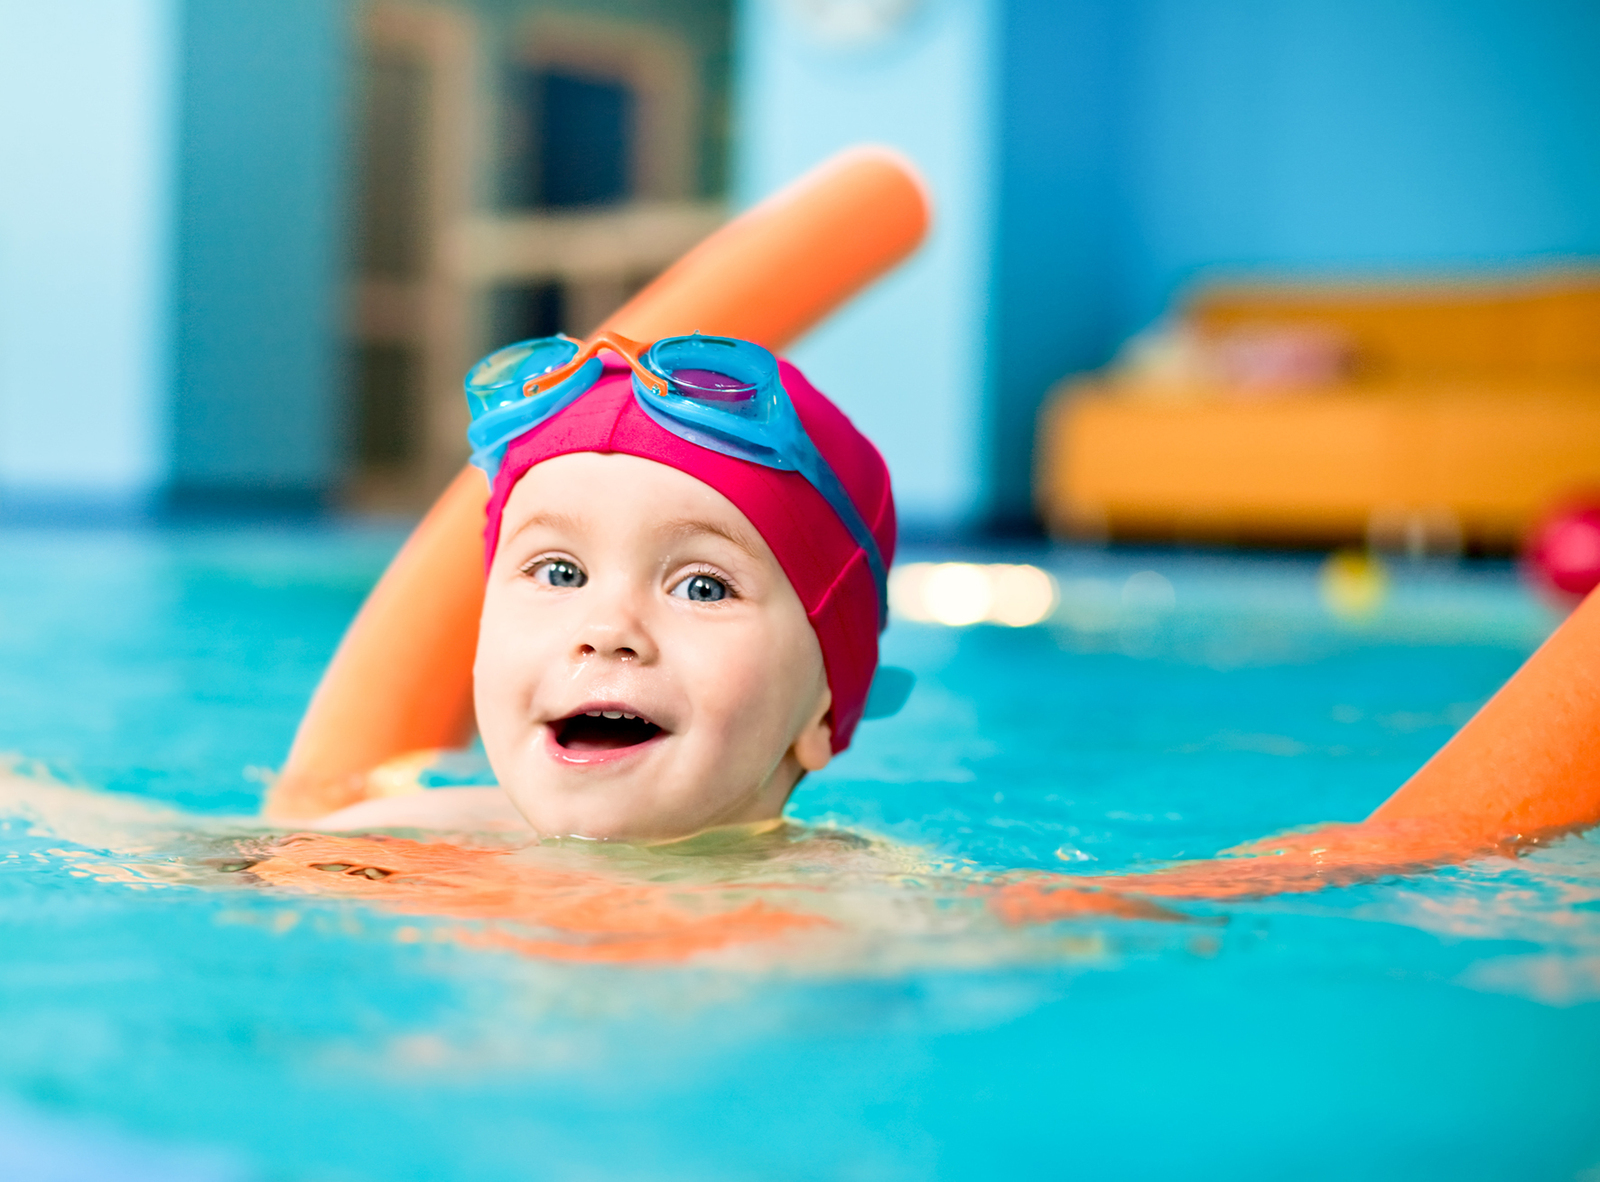 Înotul pentru copiii mari și mici. O prezentare a bazinelor din Chișinău